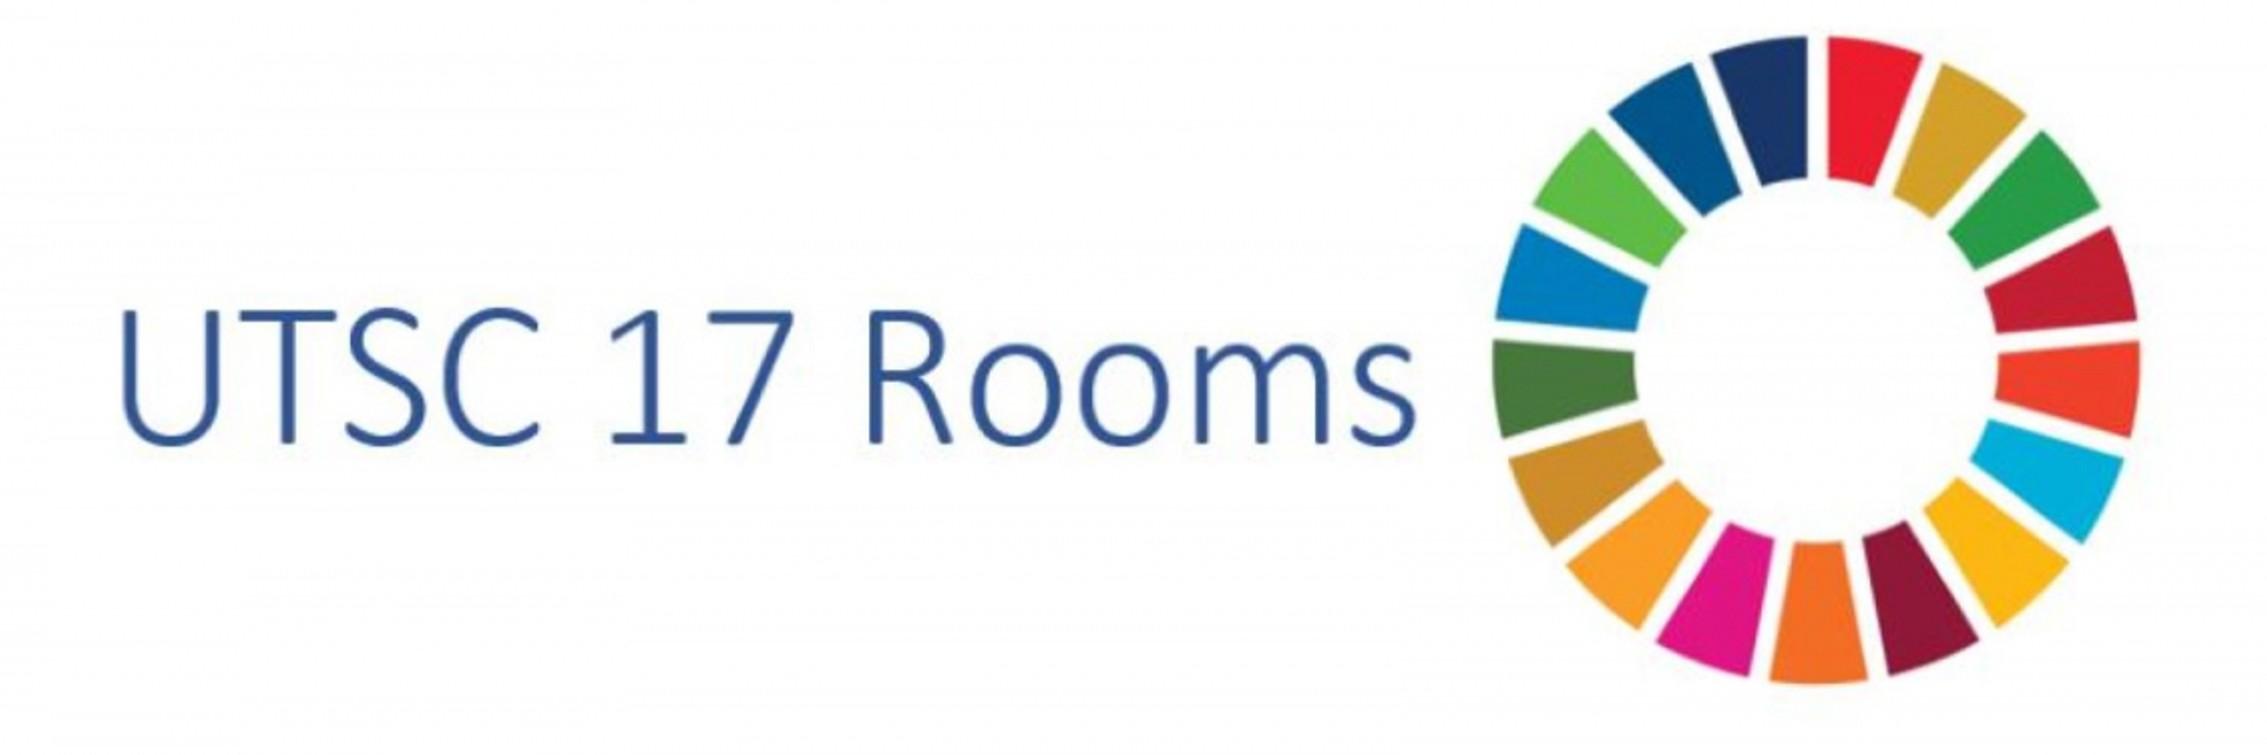 UTSC 17 Rooms bannerUTSC 17 Rooms banner